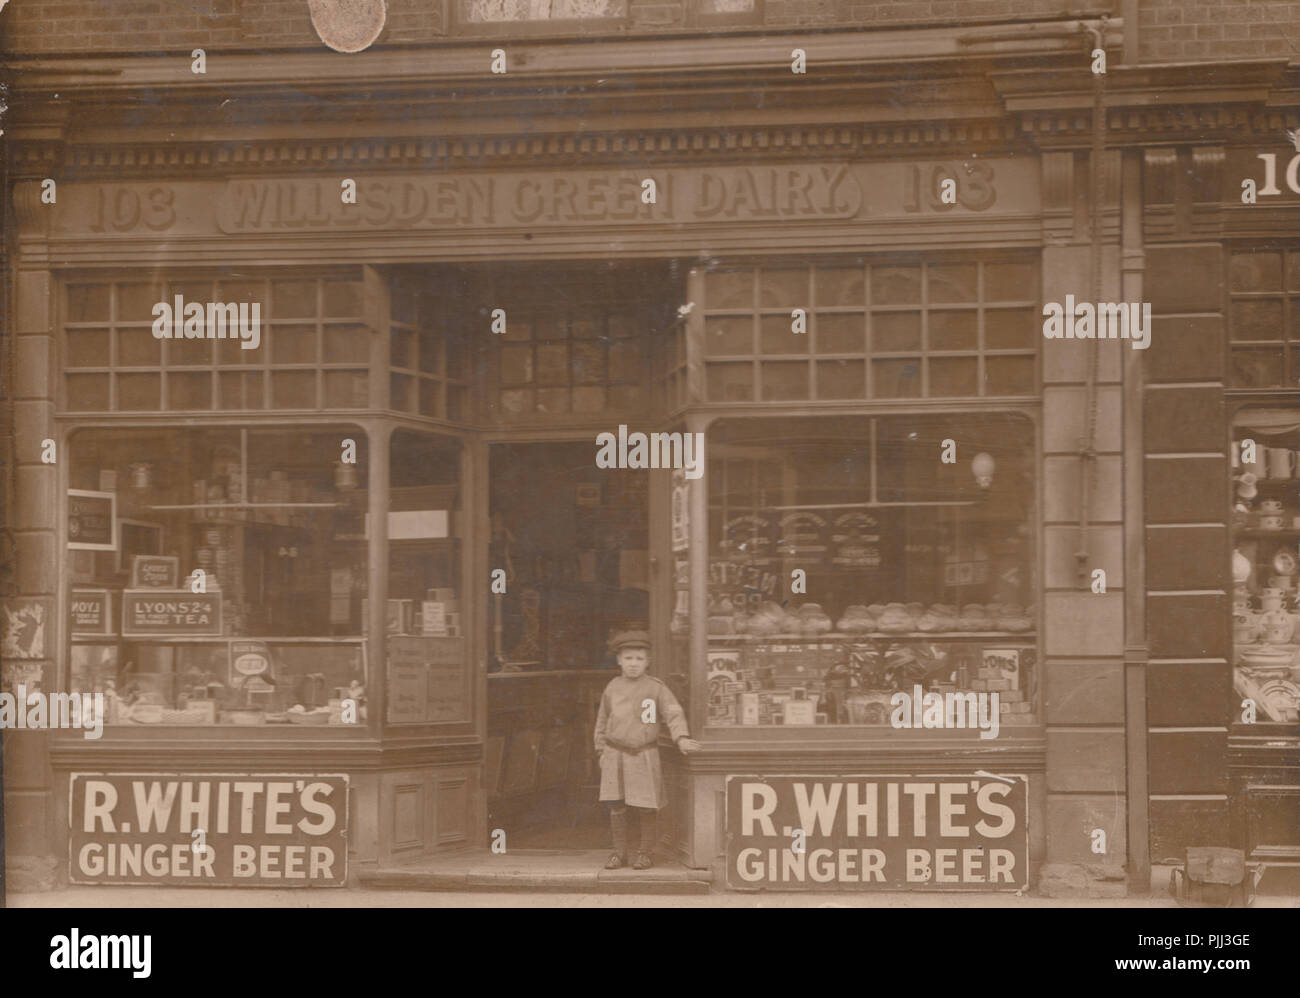 Vintage Fotografia di Willesden Green Dairy Shop al n. 103. Inserzioni per R.bianchi birra allo zenzero Foto Stock